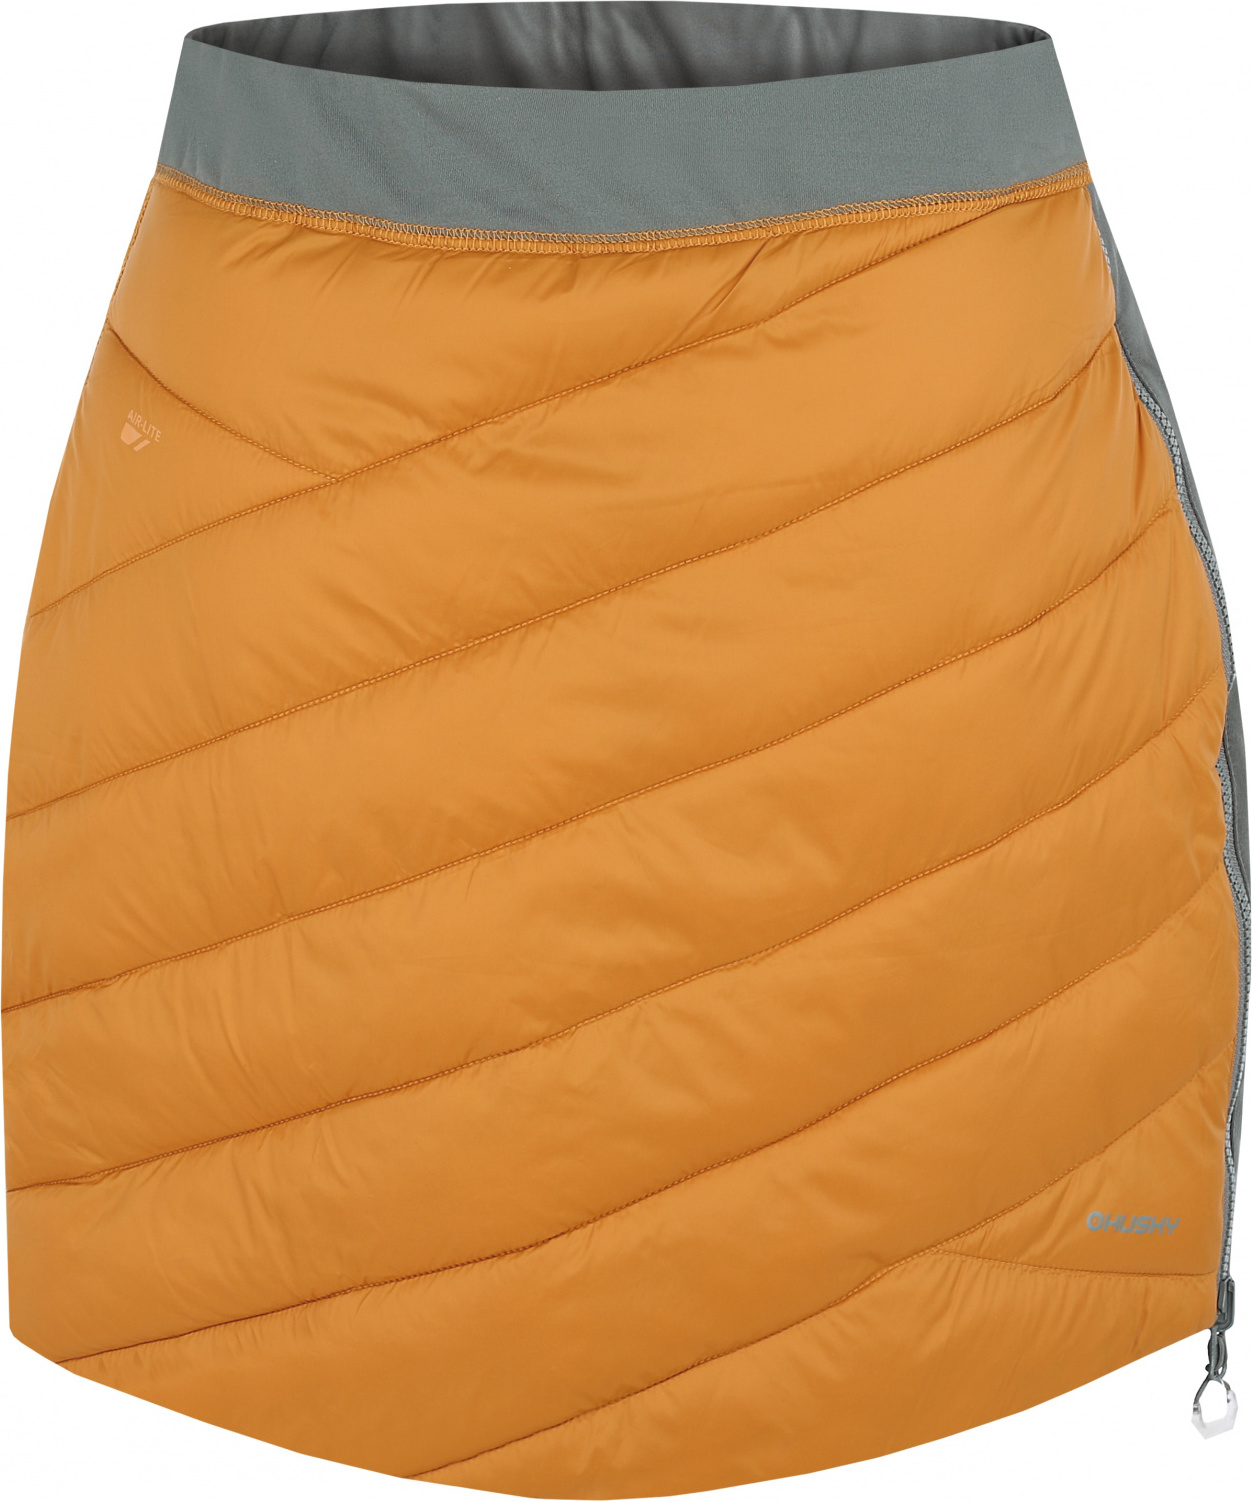 Dámská zimní sukně HUSKY Freez oranžová/khaki Velikost: S